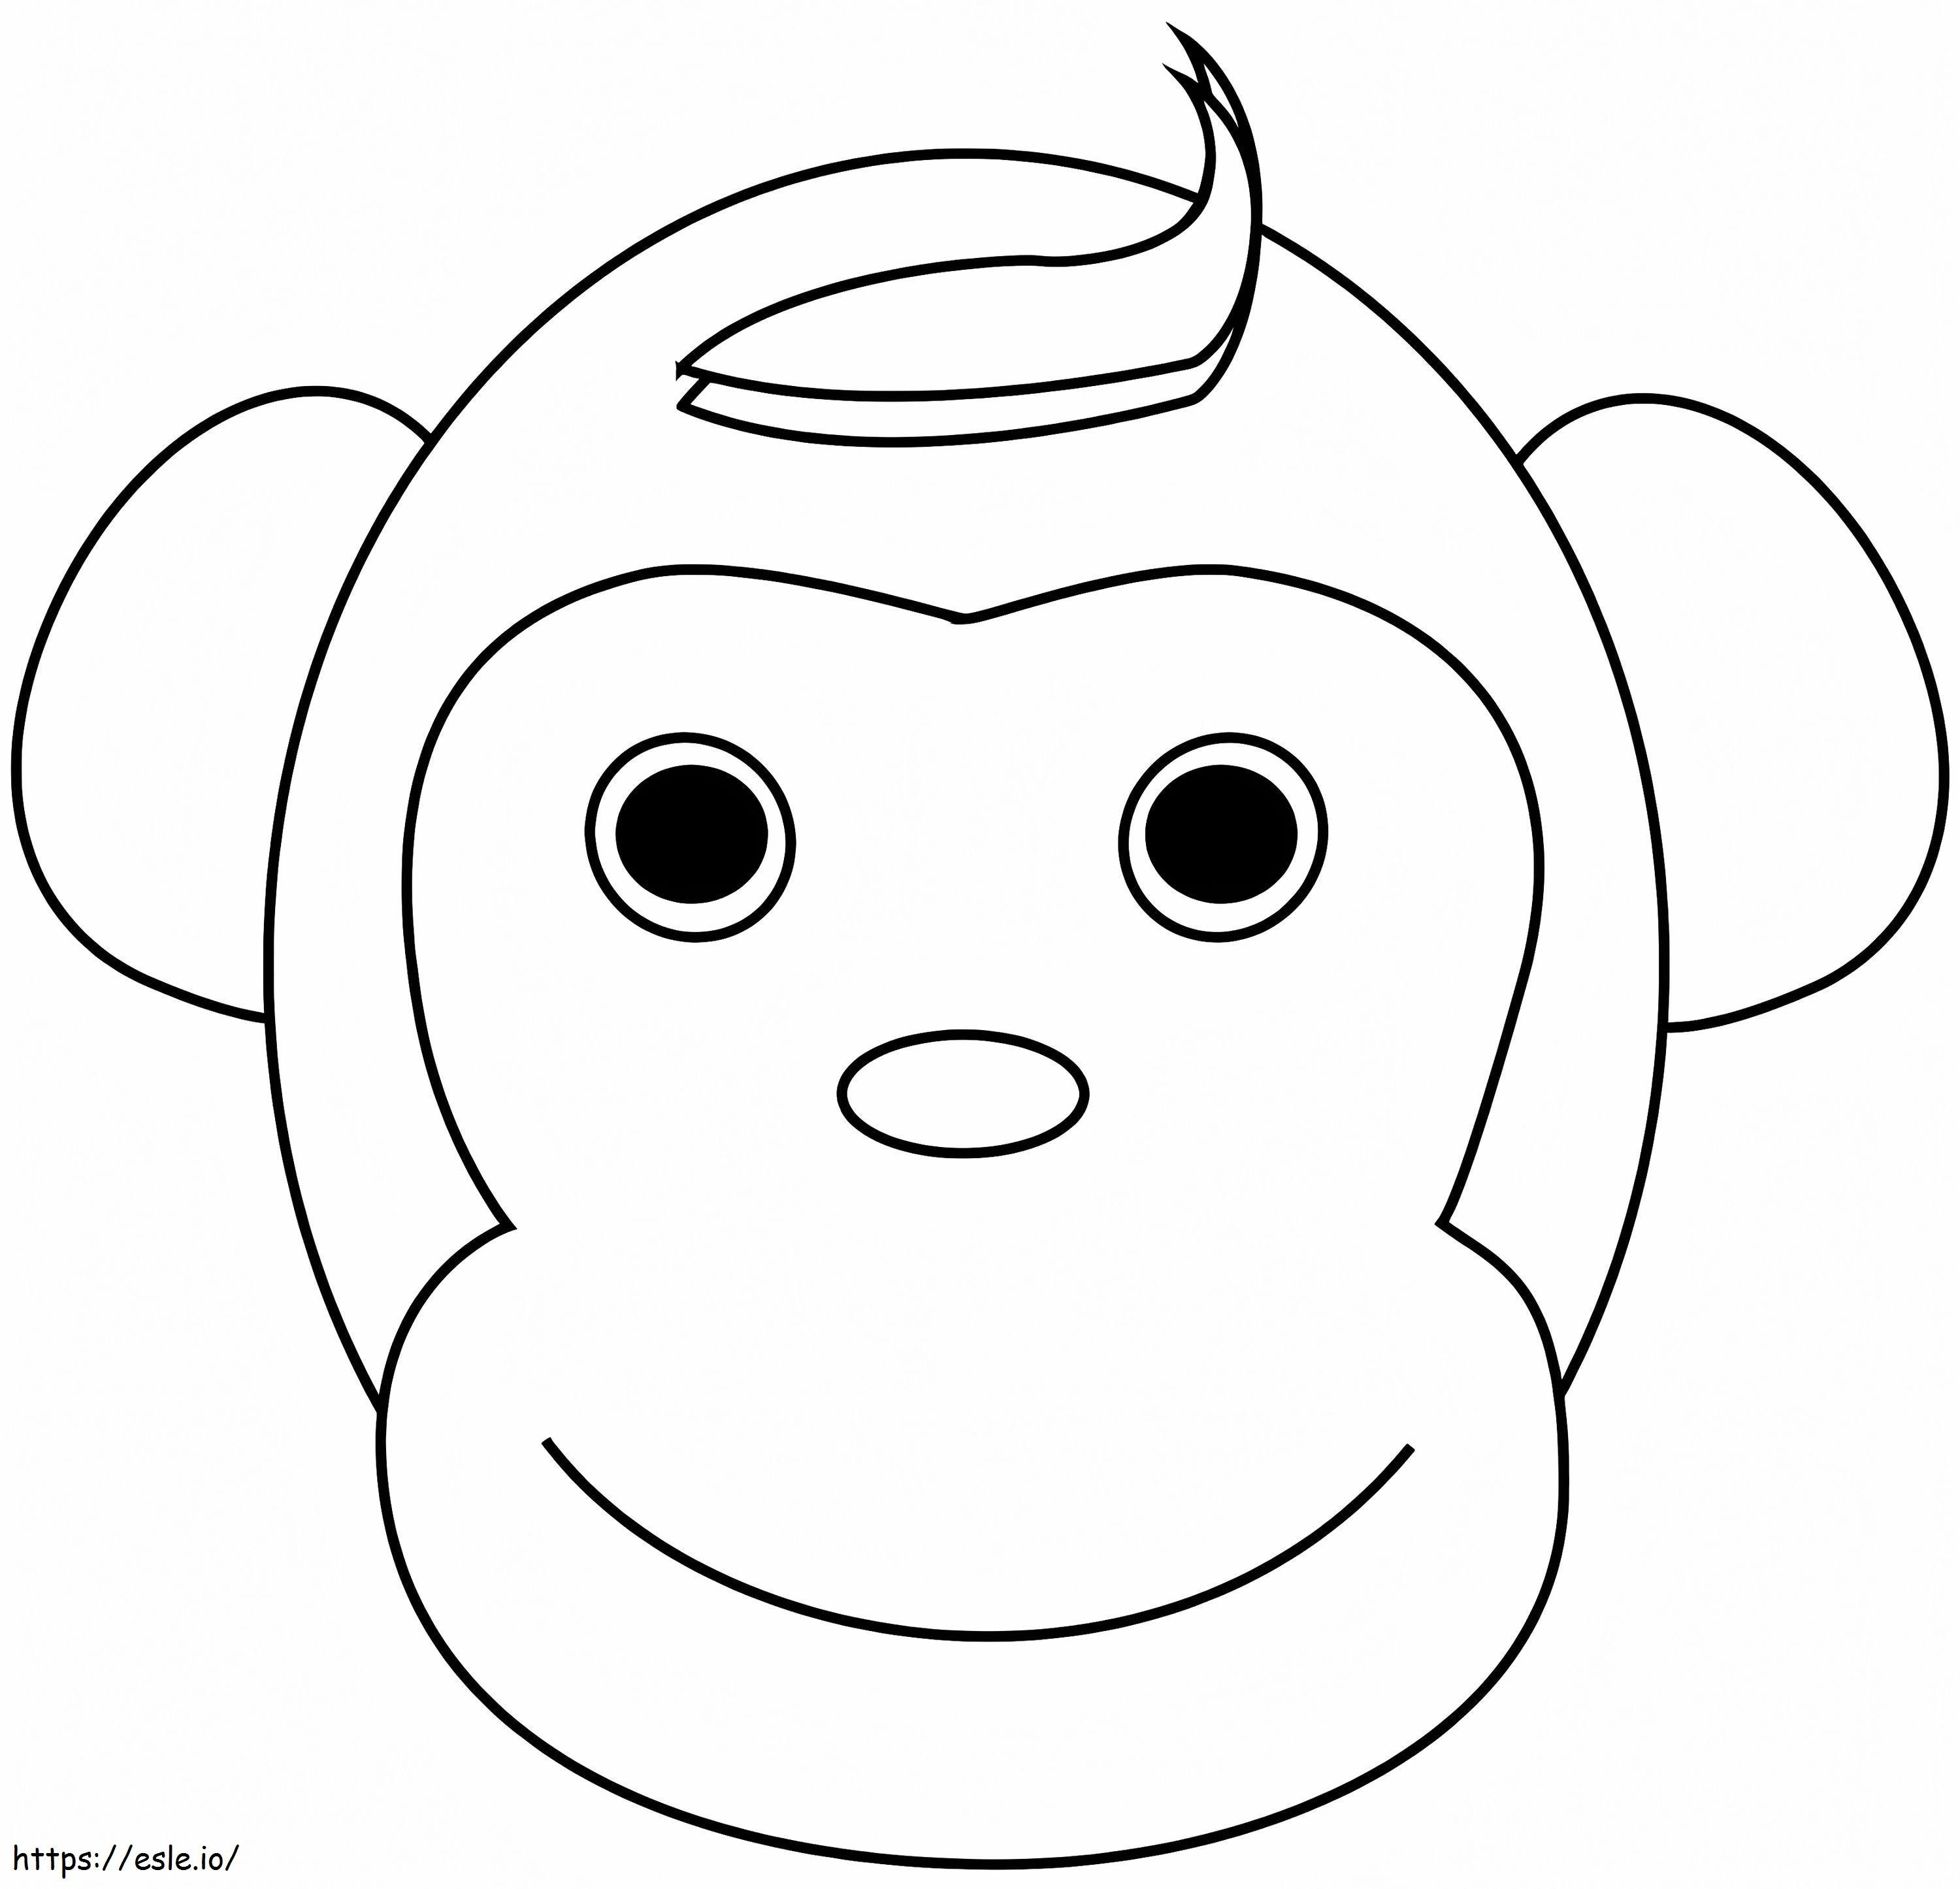 Faccia di scimmia felice da colorare